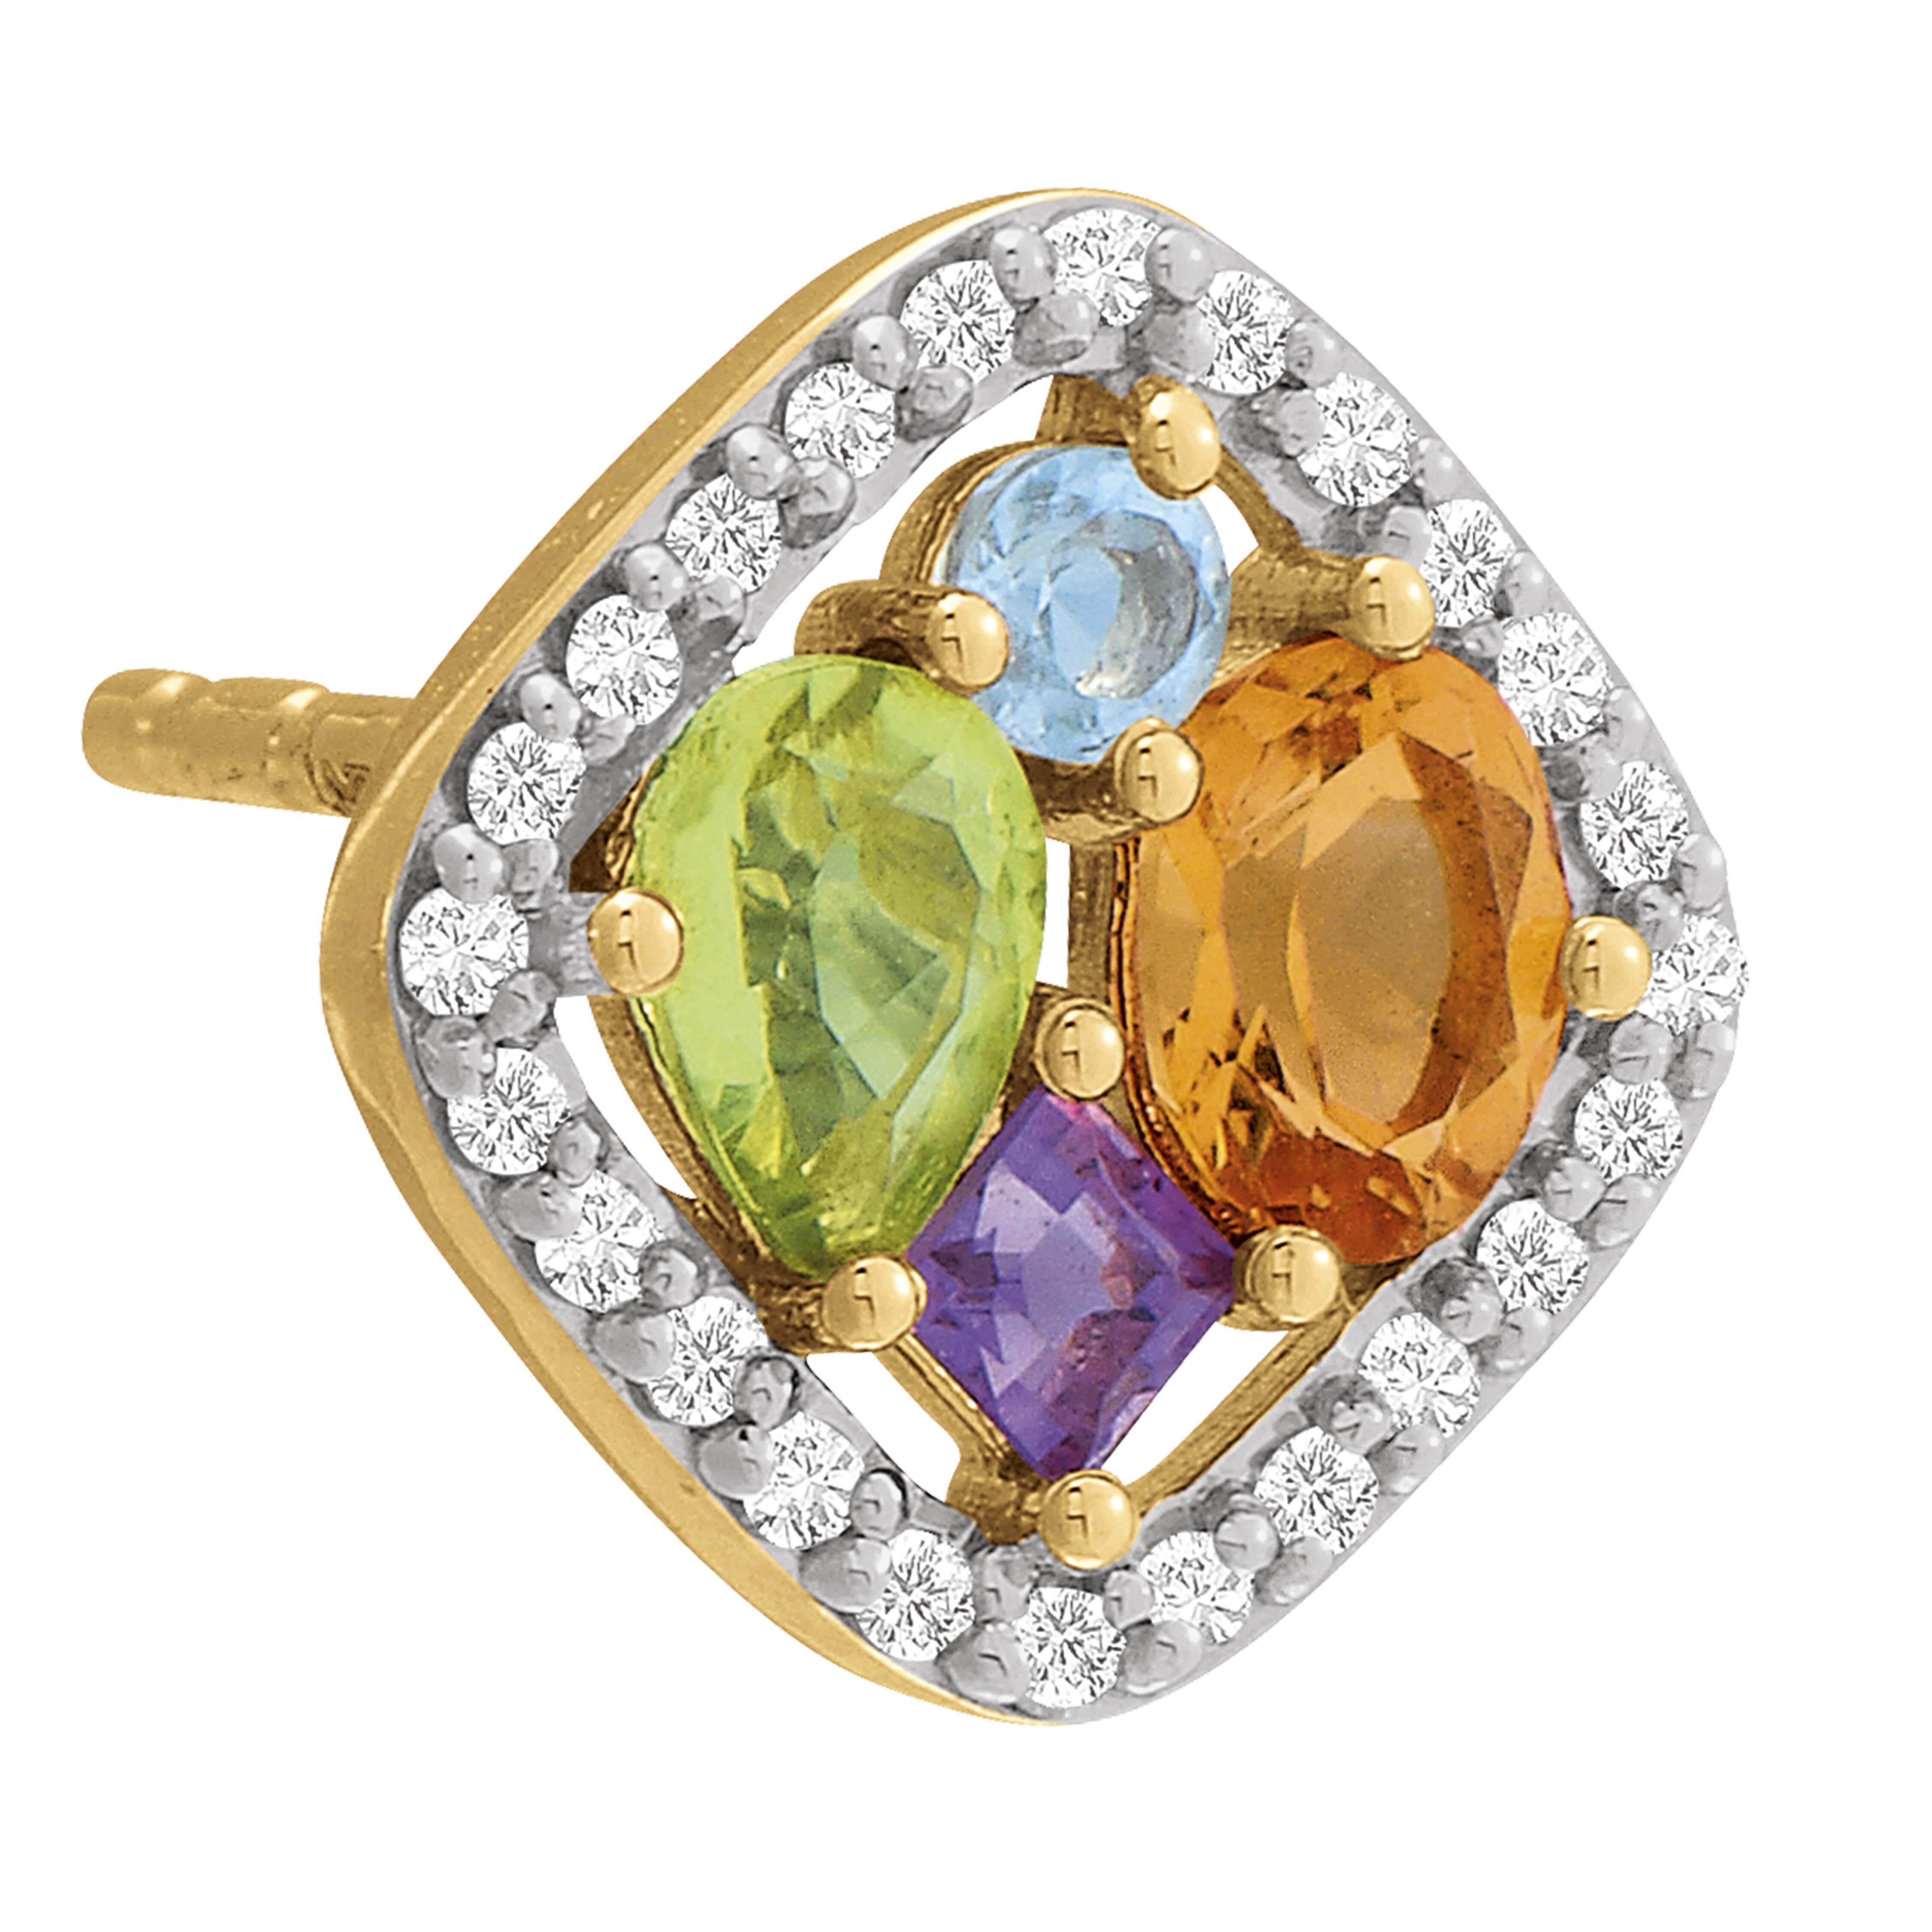 Boucles d'oreilles or jaune, diamants et pierres multicolores vue 2